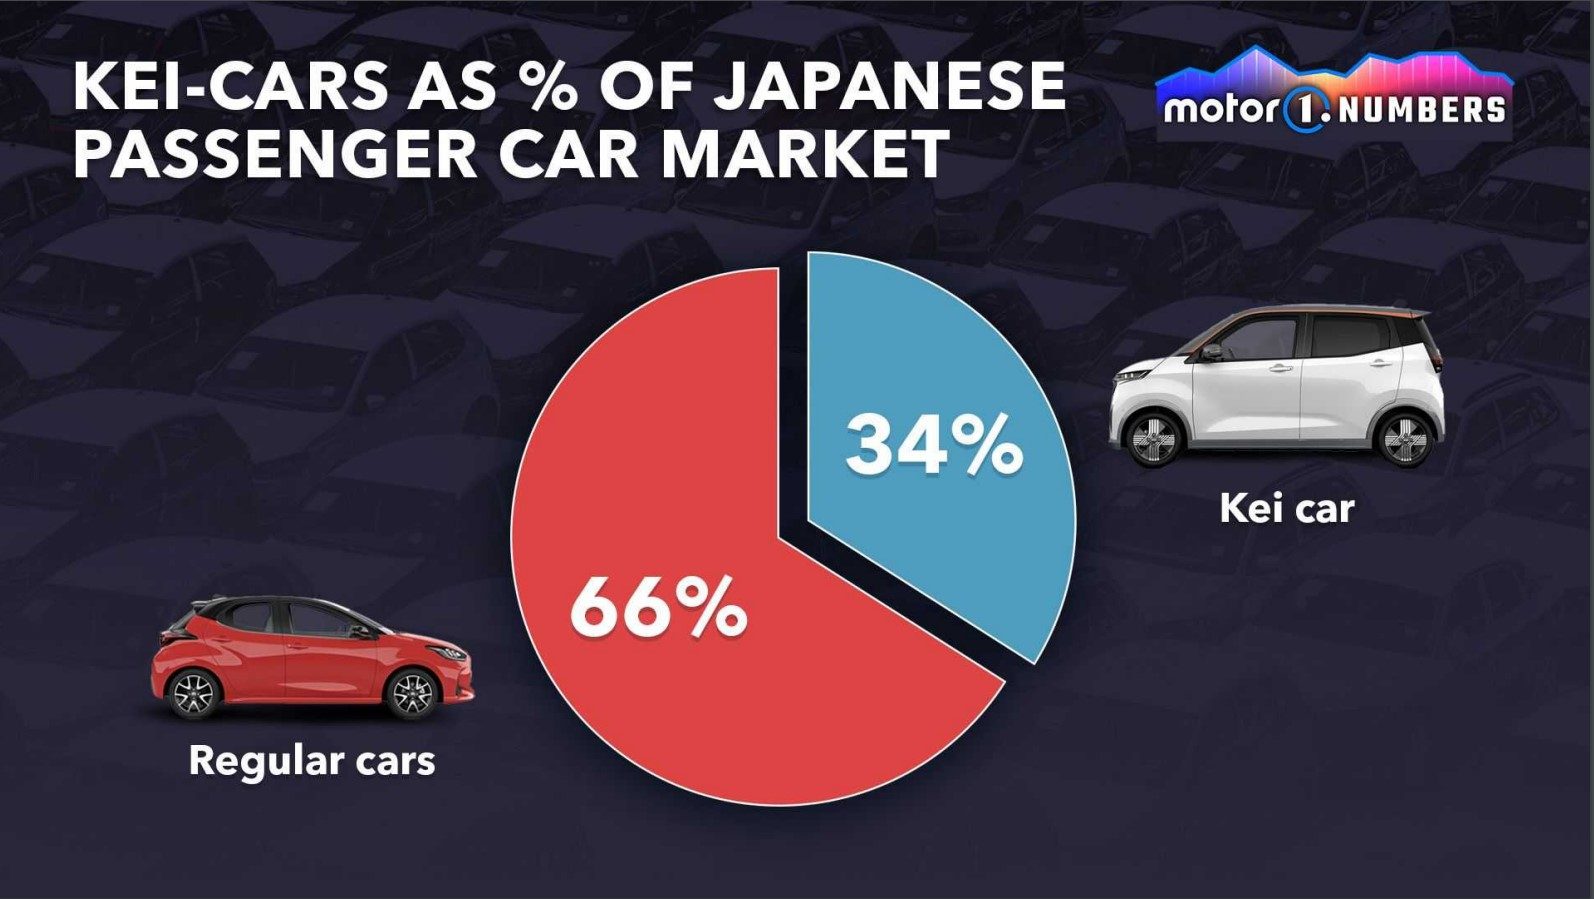 Obrazek przedstawia udział samochodów typu "kei-car" w rynku samochodów osobowych w Japonii.

Na górze obrazka widnieje duży napis "KEI-CARS AS % OF JAPANESE PASSENGER CAR MARKET" na ciemnoniebieskim tle z sylwetkami różnych samochodów. Po prawej stronie górnego rogu umieszczono logo "motor1.NUMBERS" na gradientowym tle w kolorach fioletowym i niebieskim.

Centralnym elementem grafiki jest kołowy wykres przedstawiający udziały procentowe:

34% (kolor niebieski) - samochody typu "kei-car", reprezentowane przez biały minivan oznaczony jako "Kei car".
66% (kolor czerwony) - regularne samochody, reprezentowane przez czerwony hatchback oznaczony jako "Regular cars".
Kolory użyte na wykresie odpowiadają kolorom samochodów reprezentujących każdą z kategorii.